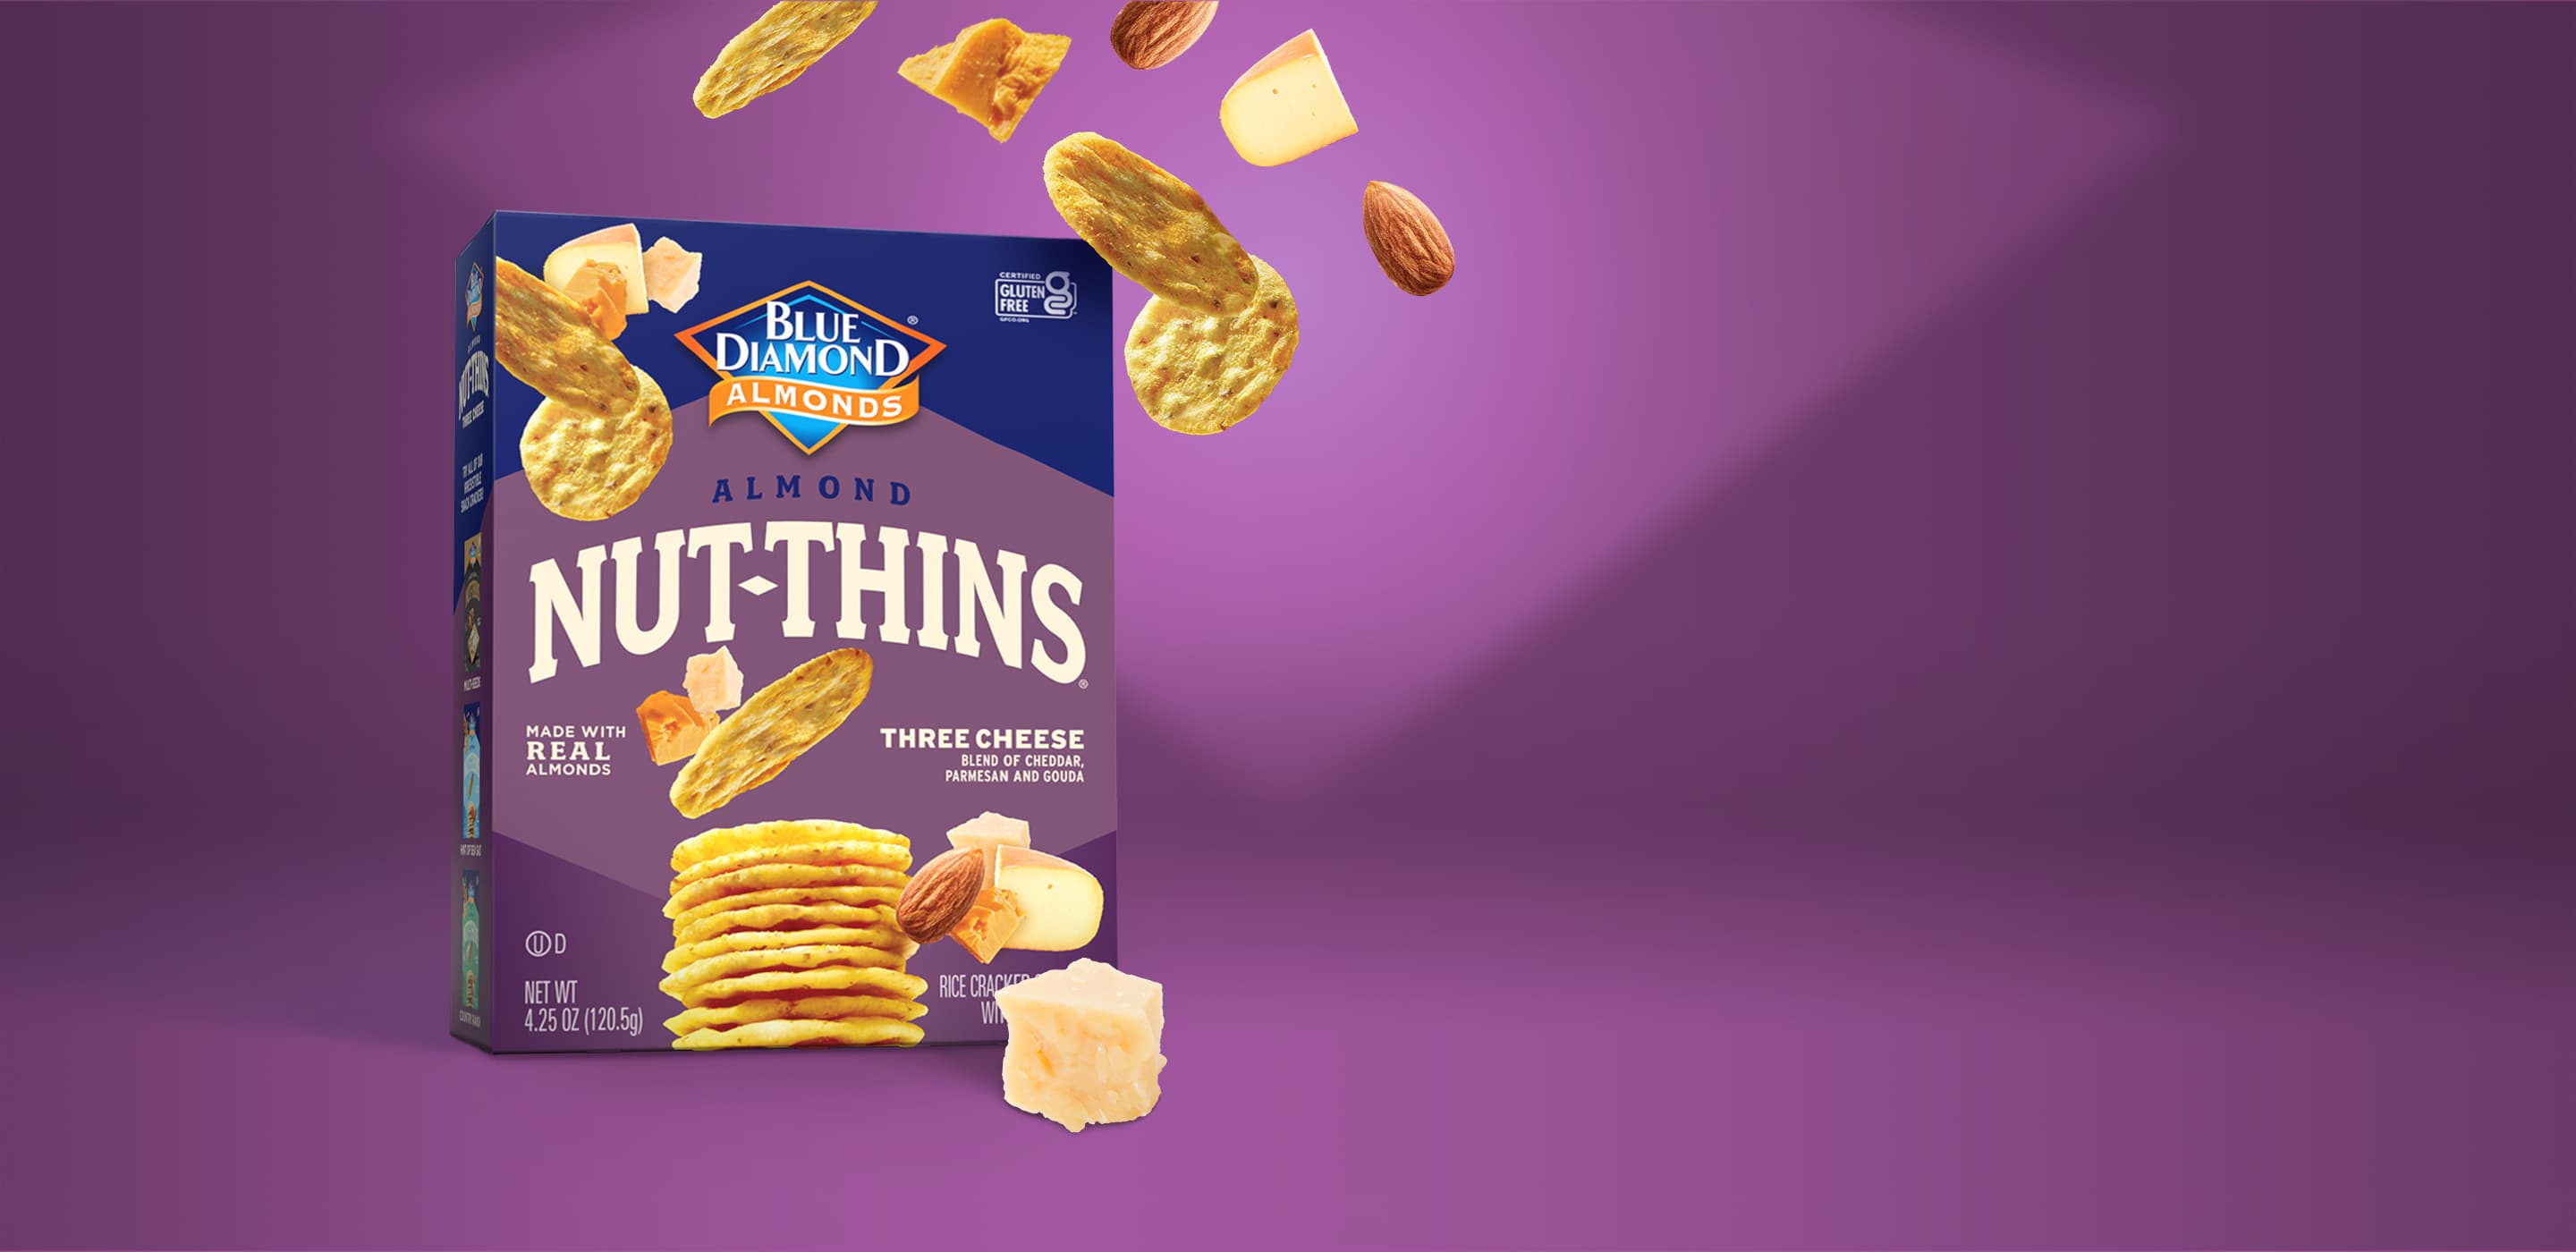 Three Cheese Nut-Thins(R)